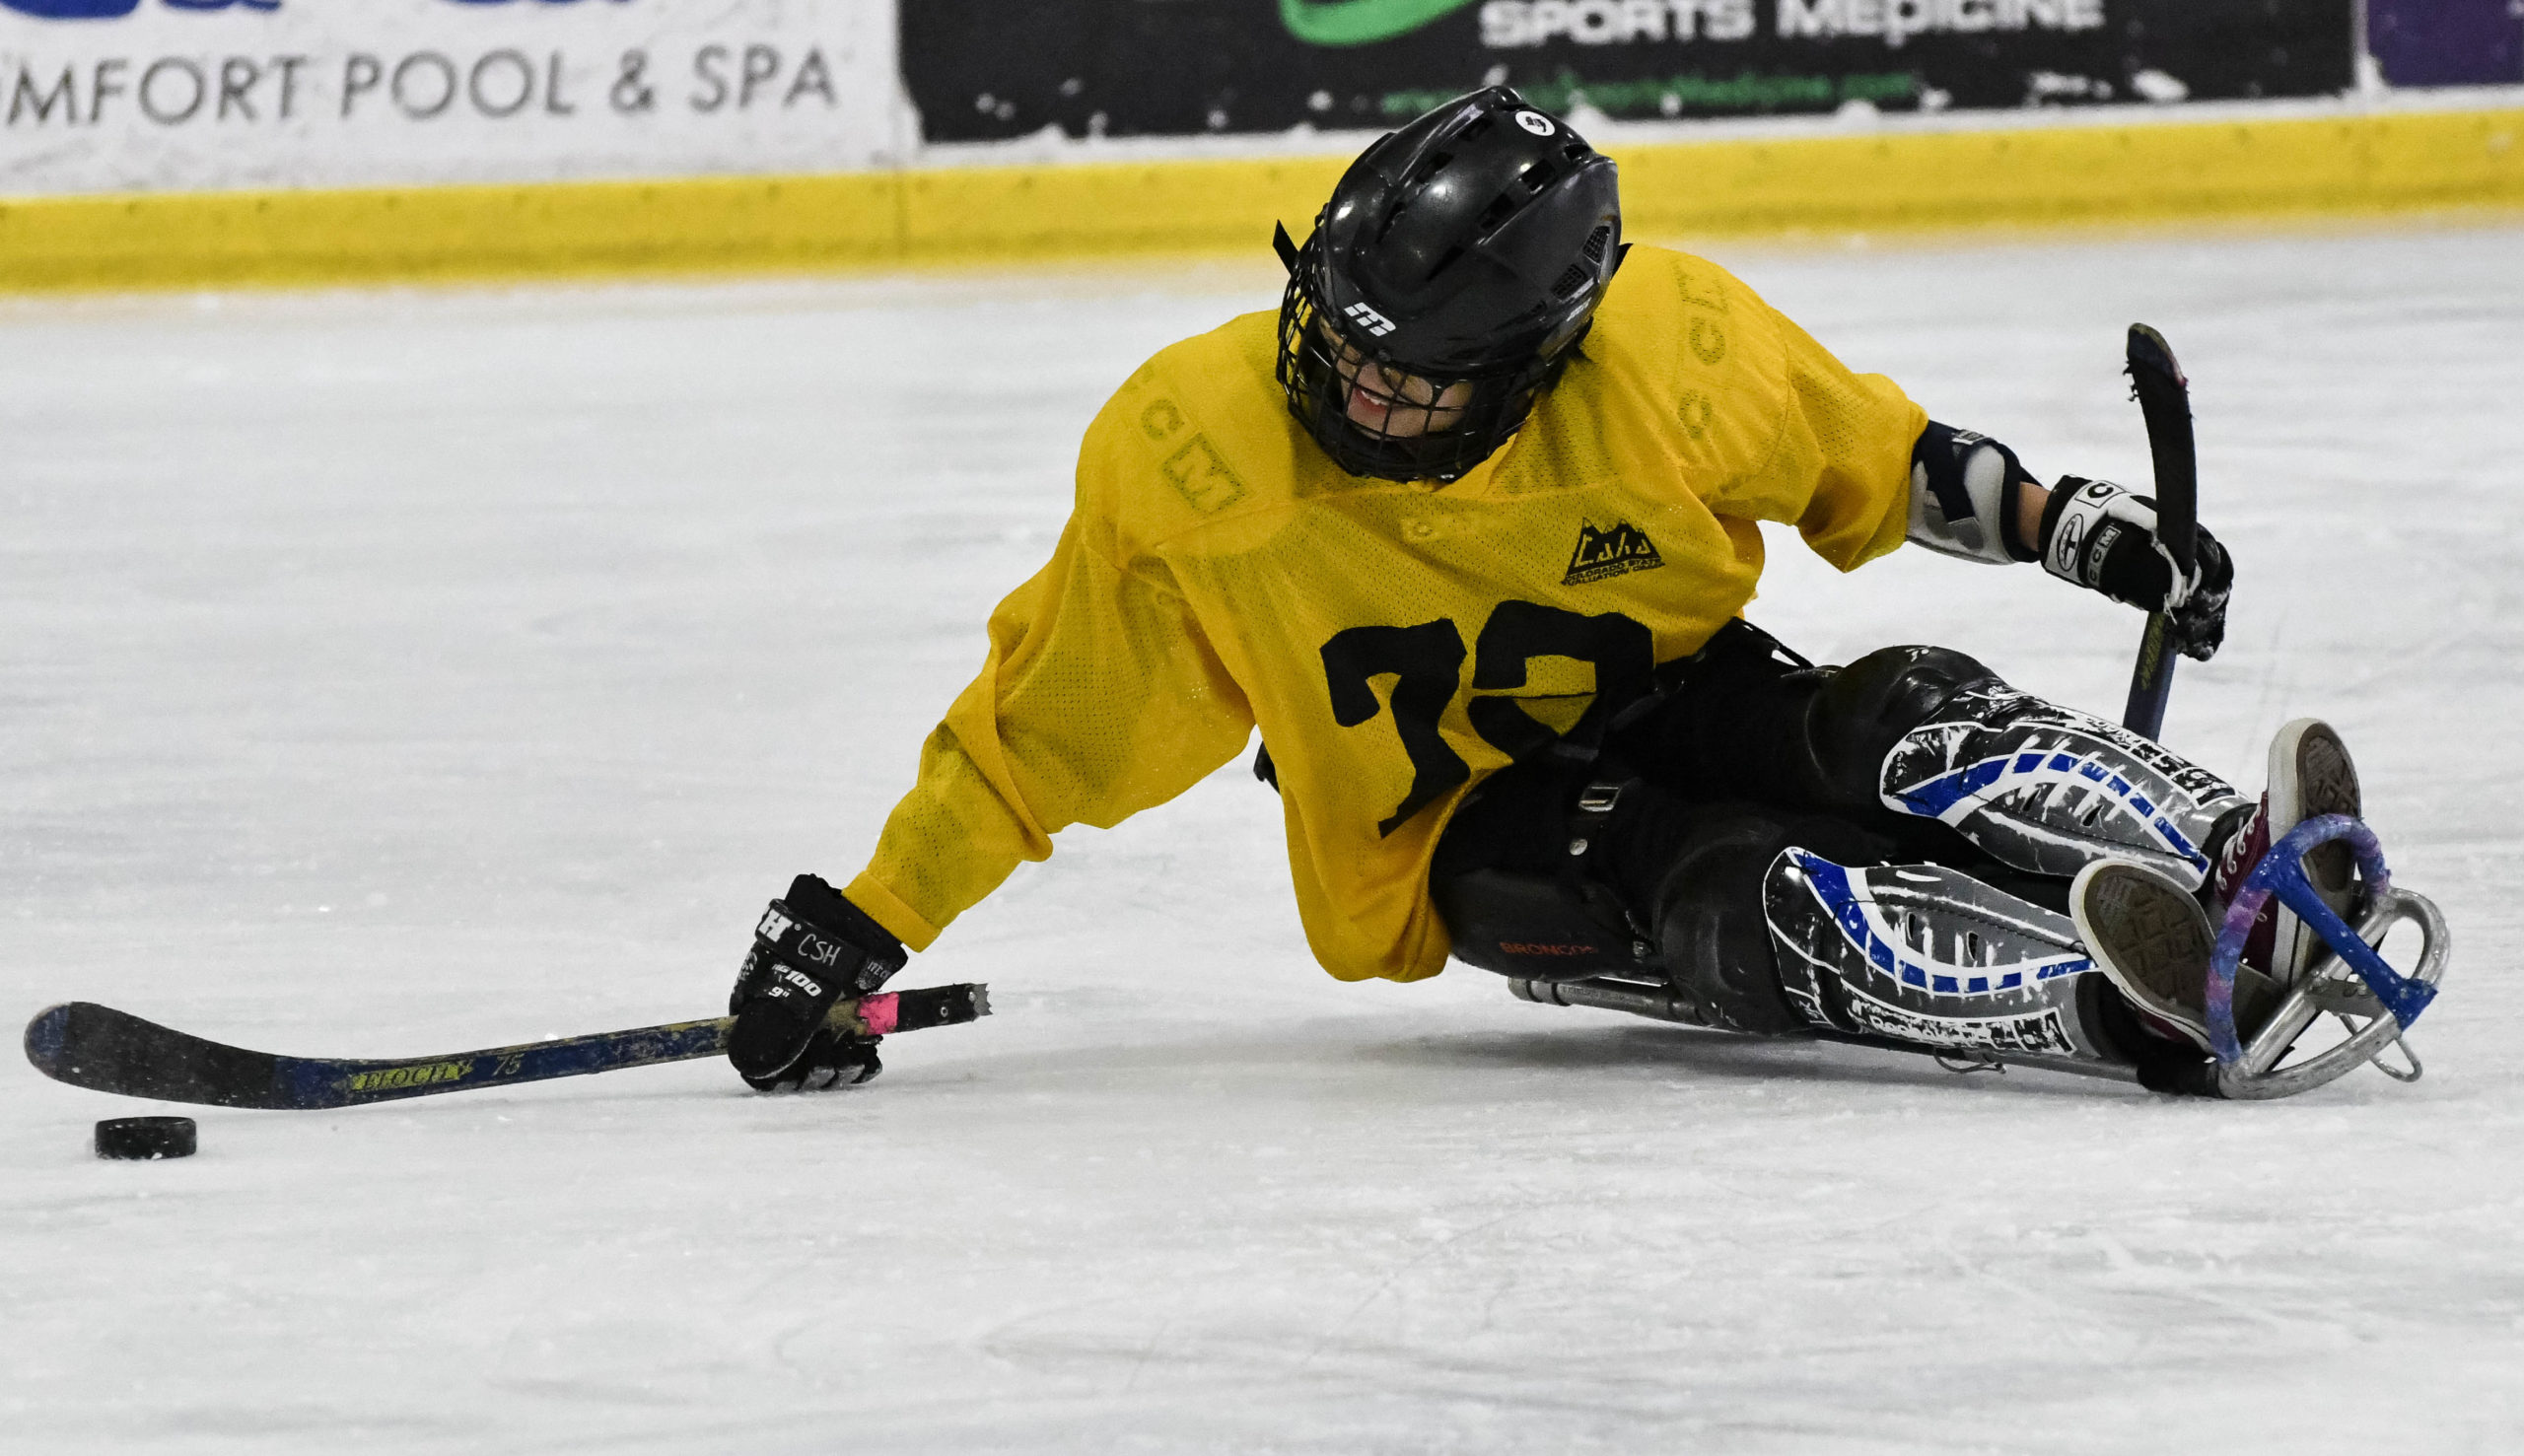 Athlete playing sled hockey